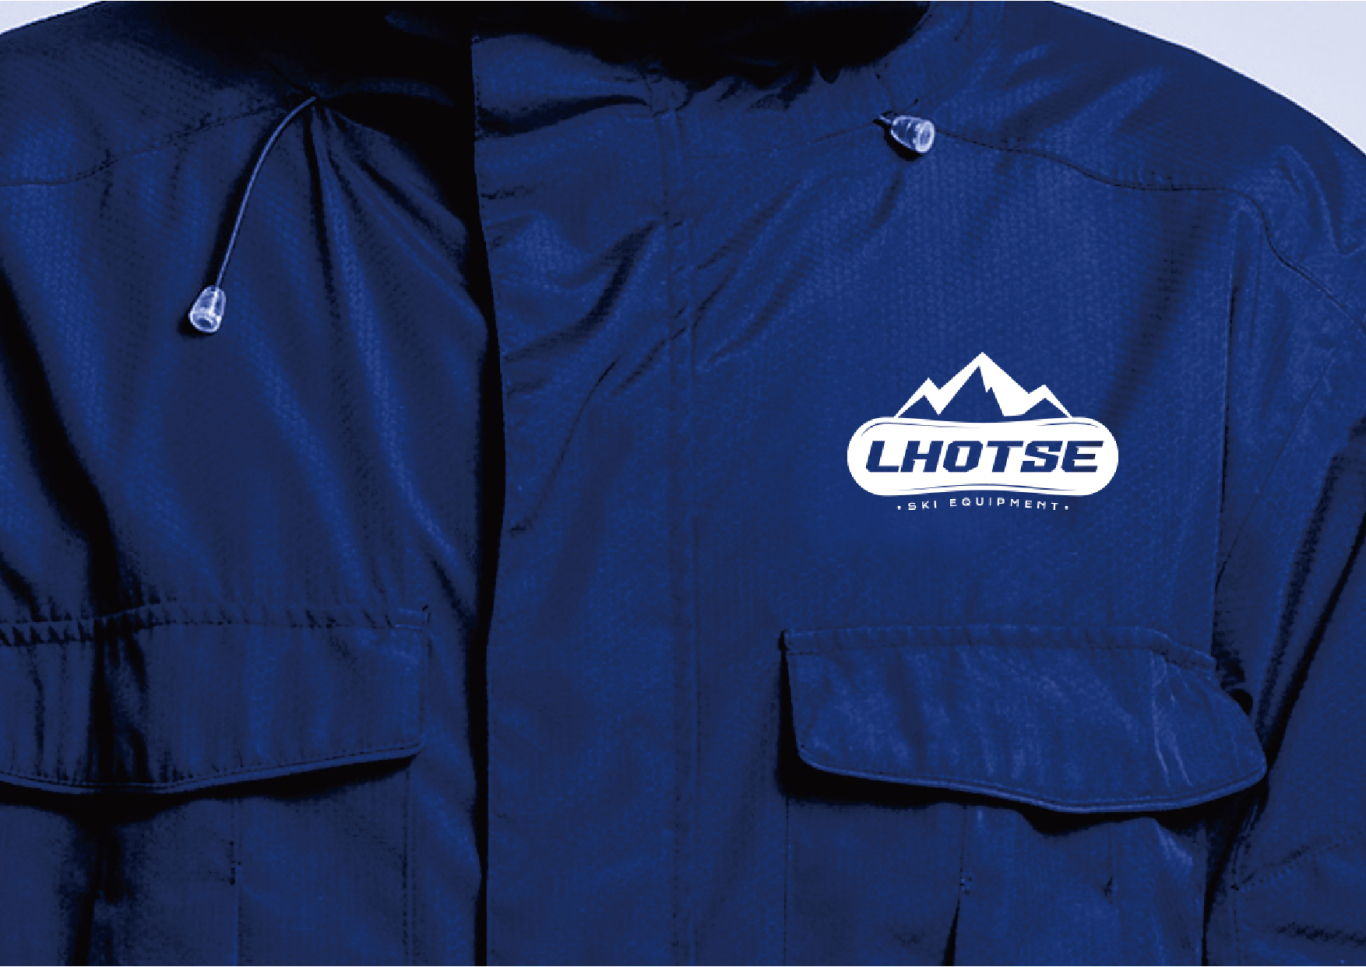 Lhotse滑雪器材logo设计图5